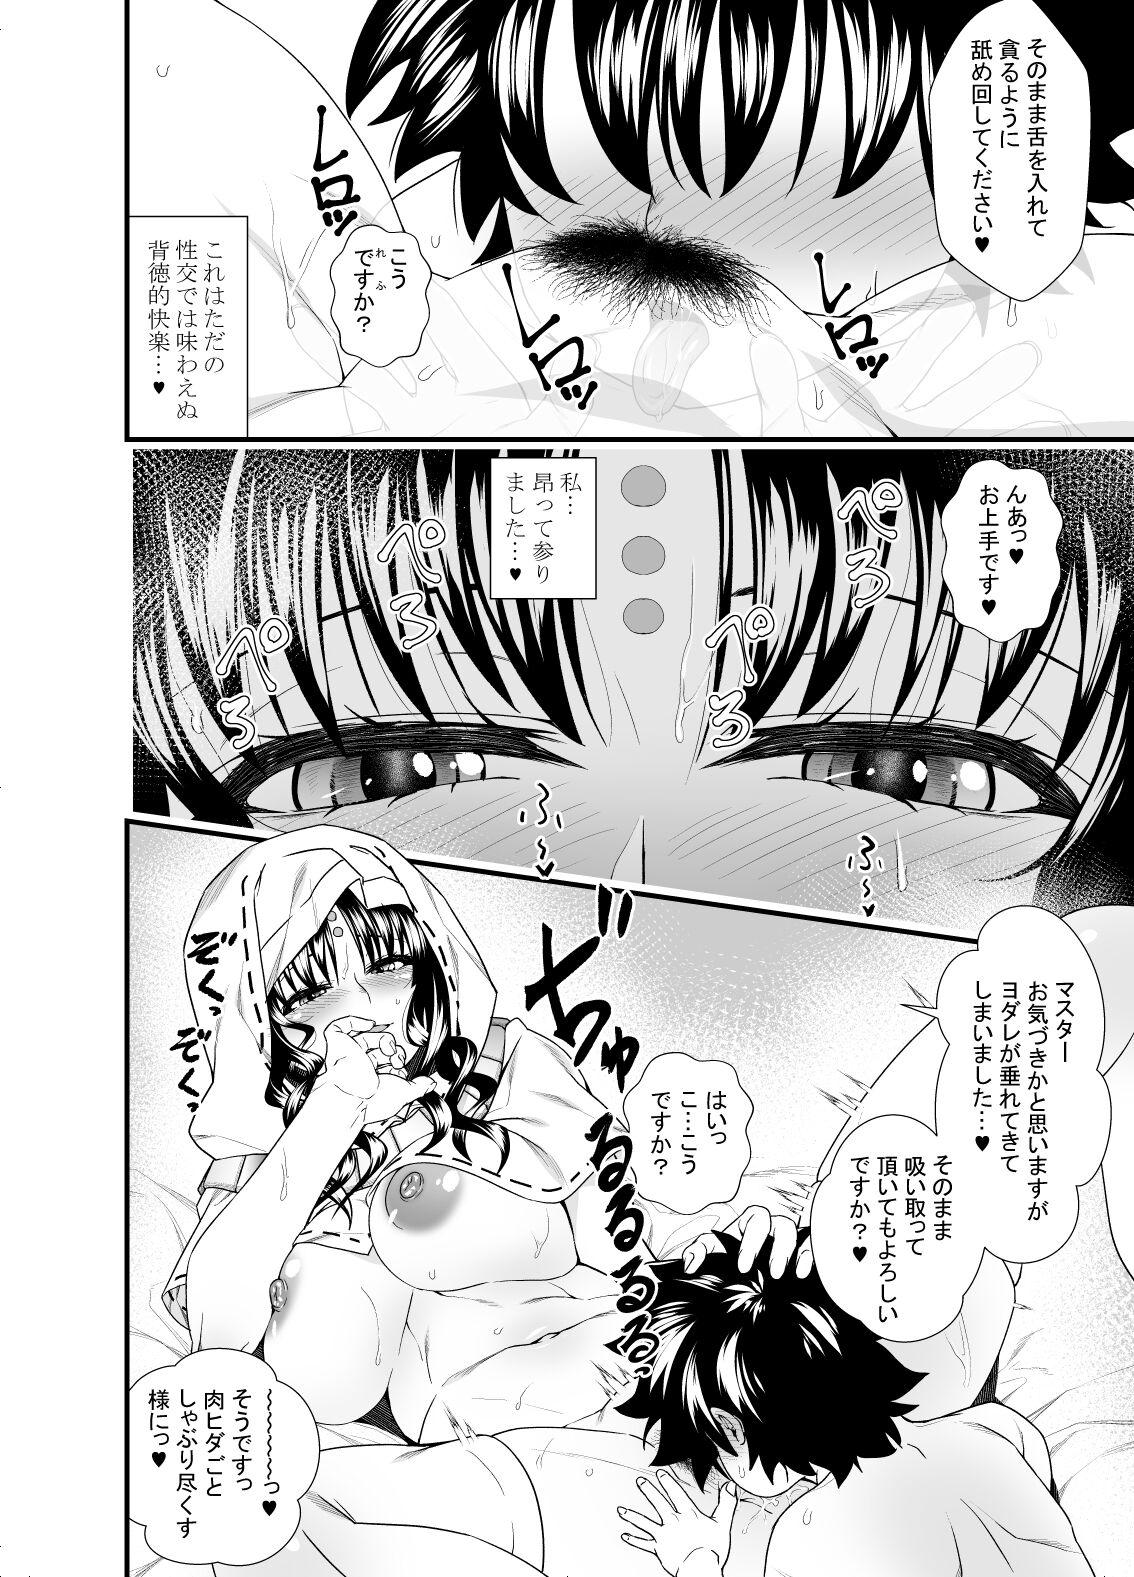 Oneshota Manga #01c 3